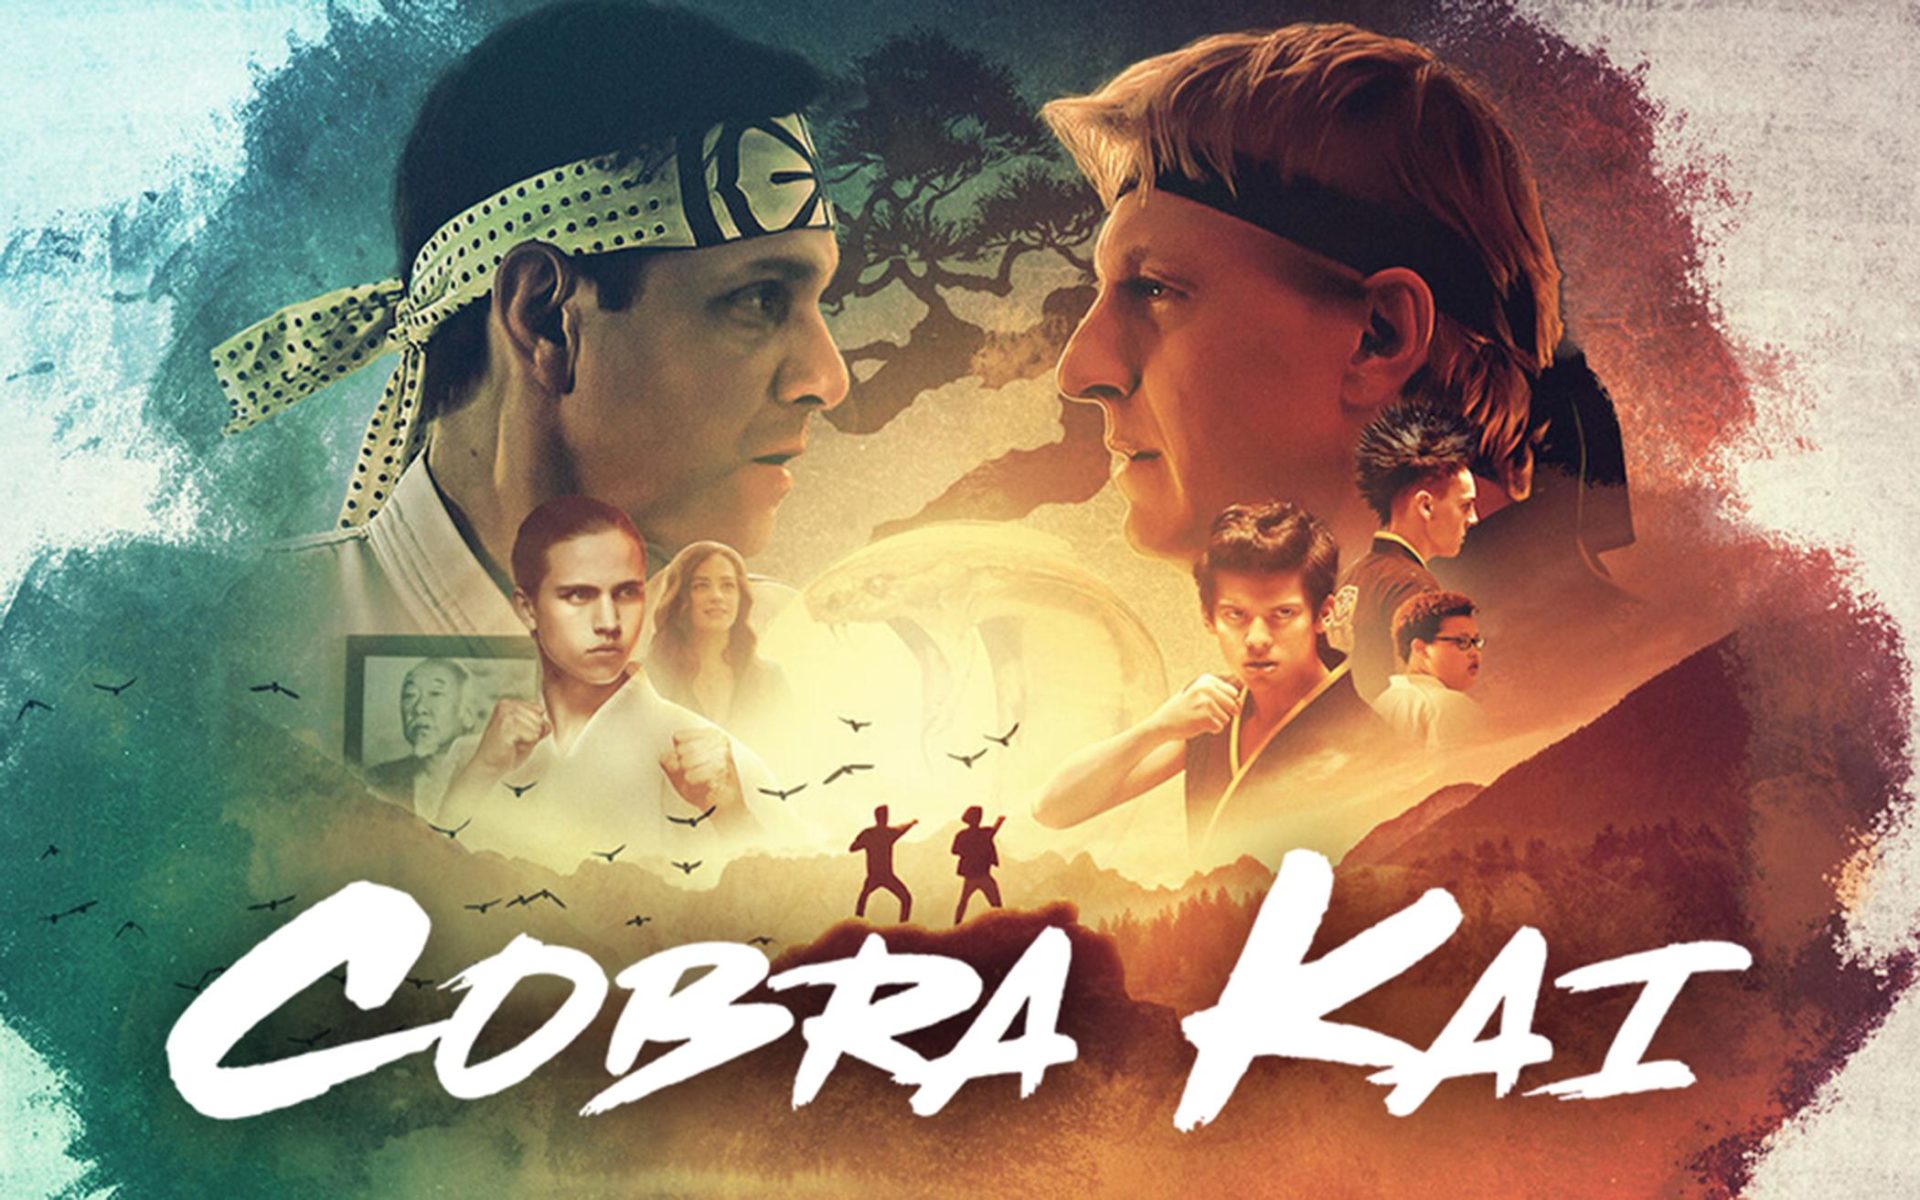 Cobra Kai Series Poster